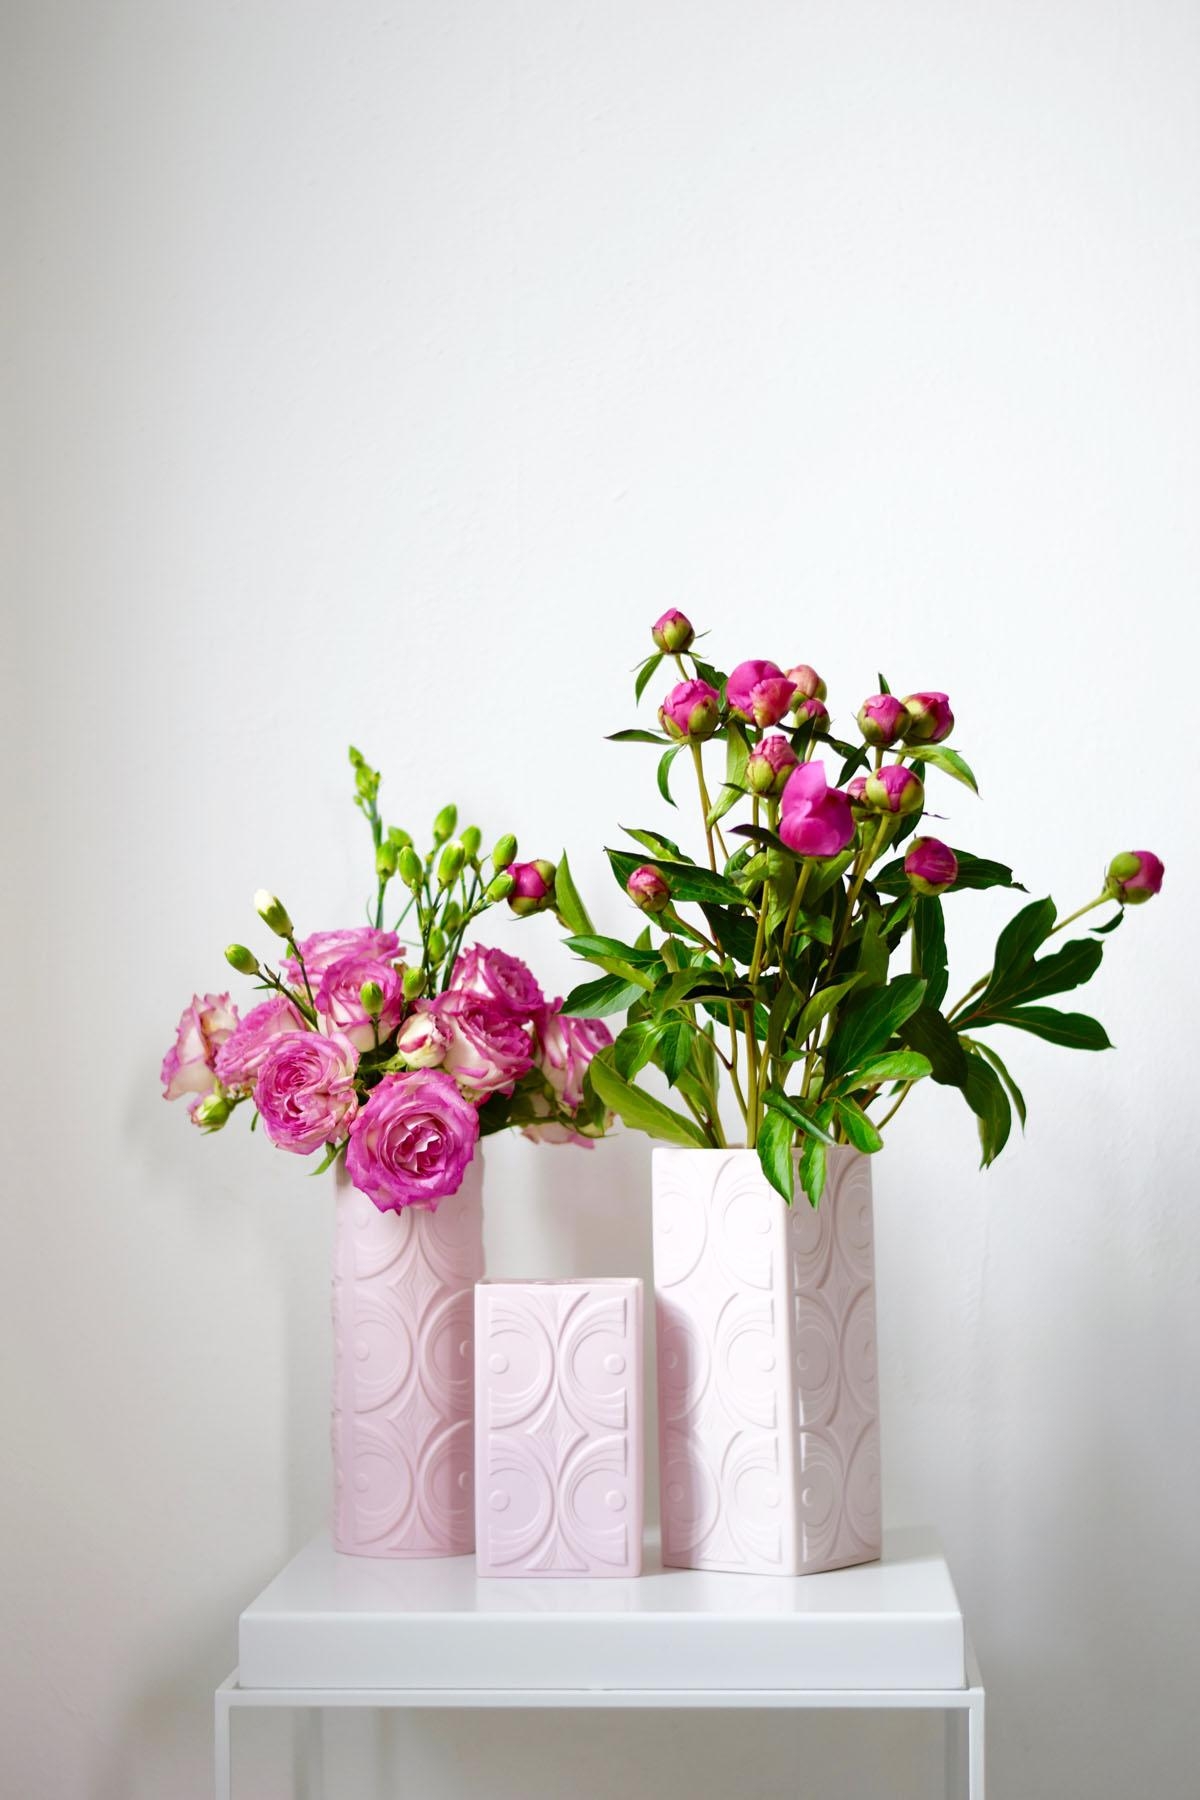 Pfingstrosen und Freiland-Rosen in zwei meiner schönsten Biskuitporzellan Vasen in zartem Rosé...
#pfingstrosen #vasen